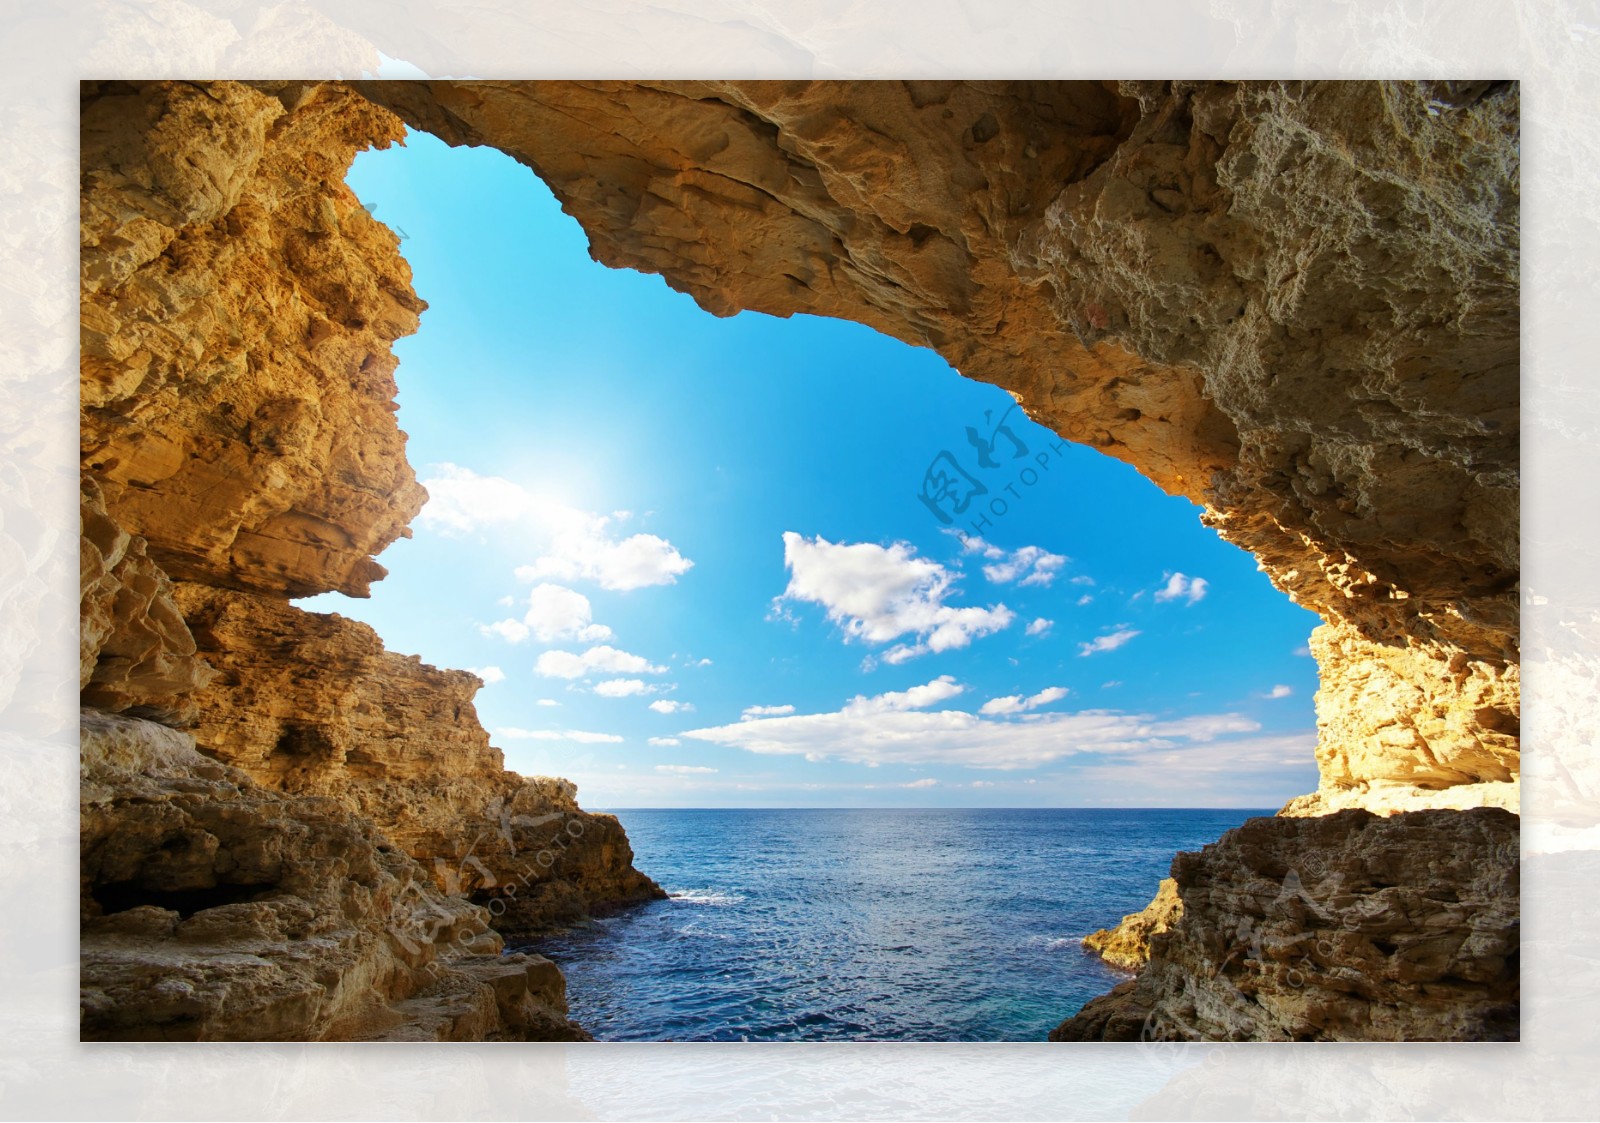 大海海岛洞穴自然风光图片